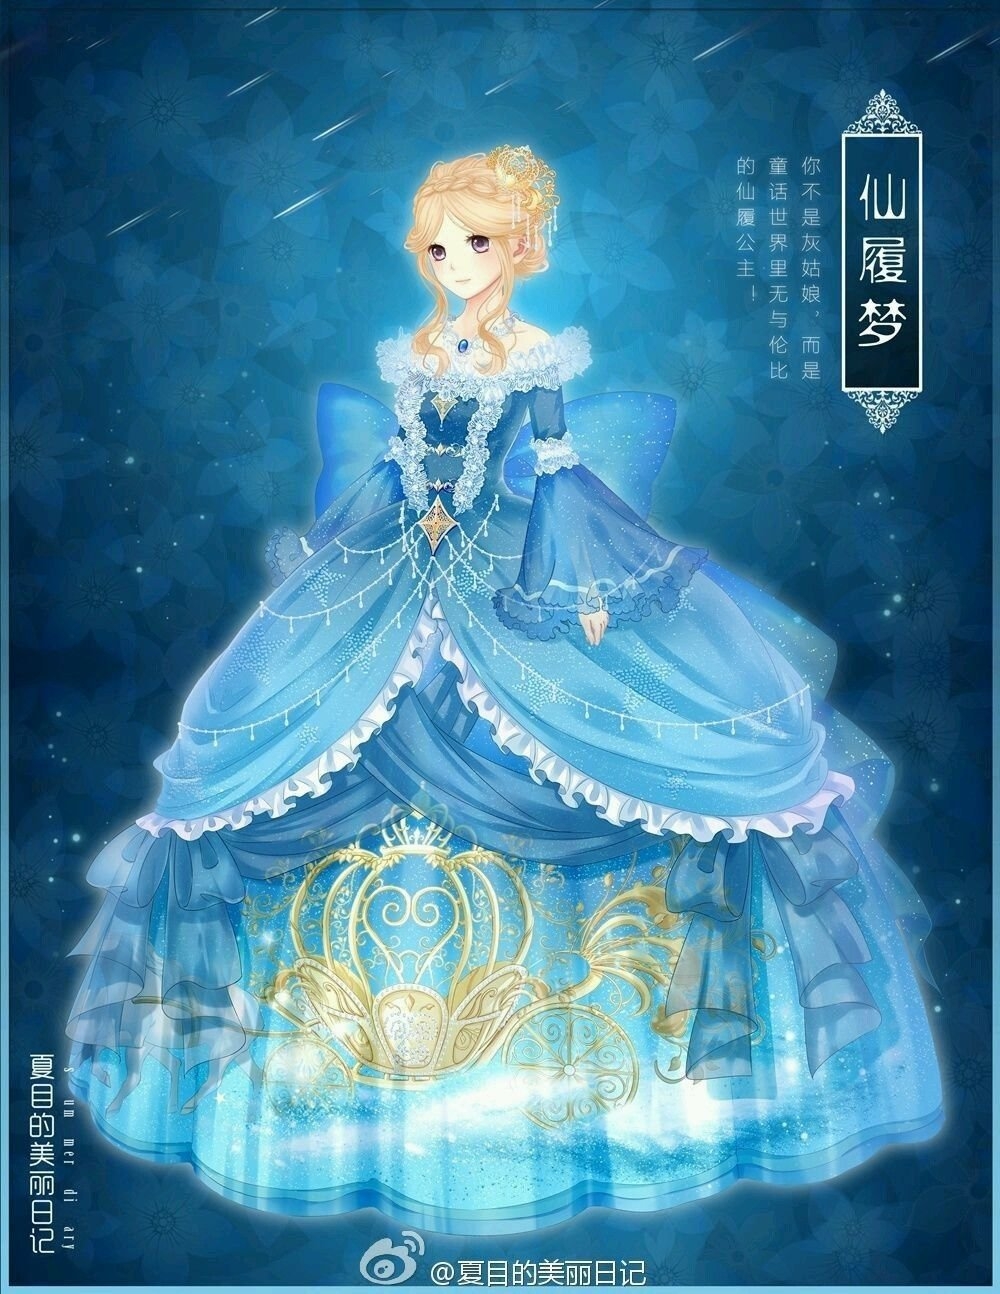 Японская золушка. Принцесса Офелия аниме. Золушка аниме. Принцесса Золушка аниме. Аниме принцесса в голубом платье.